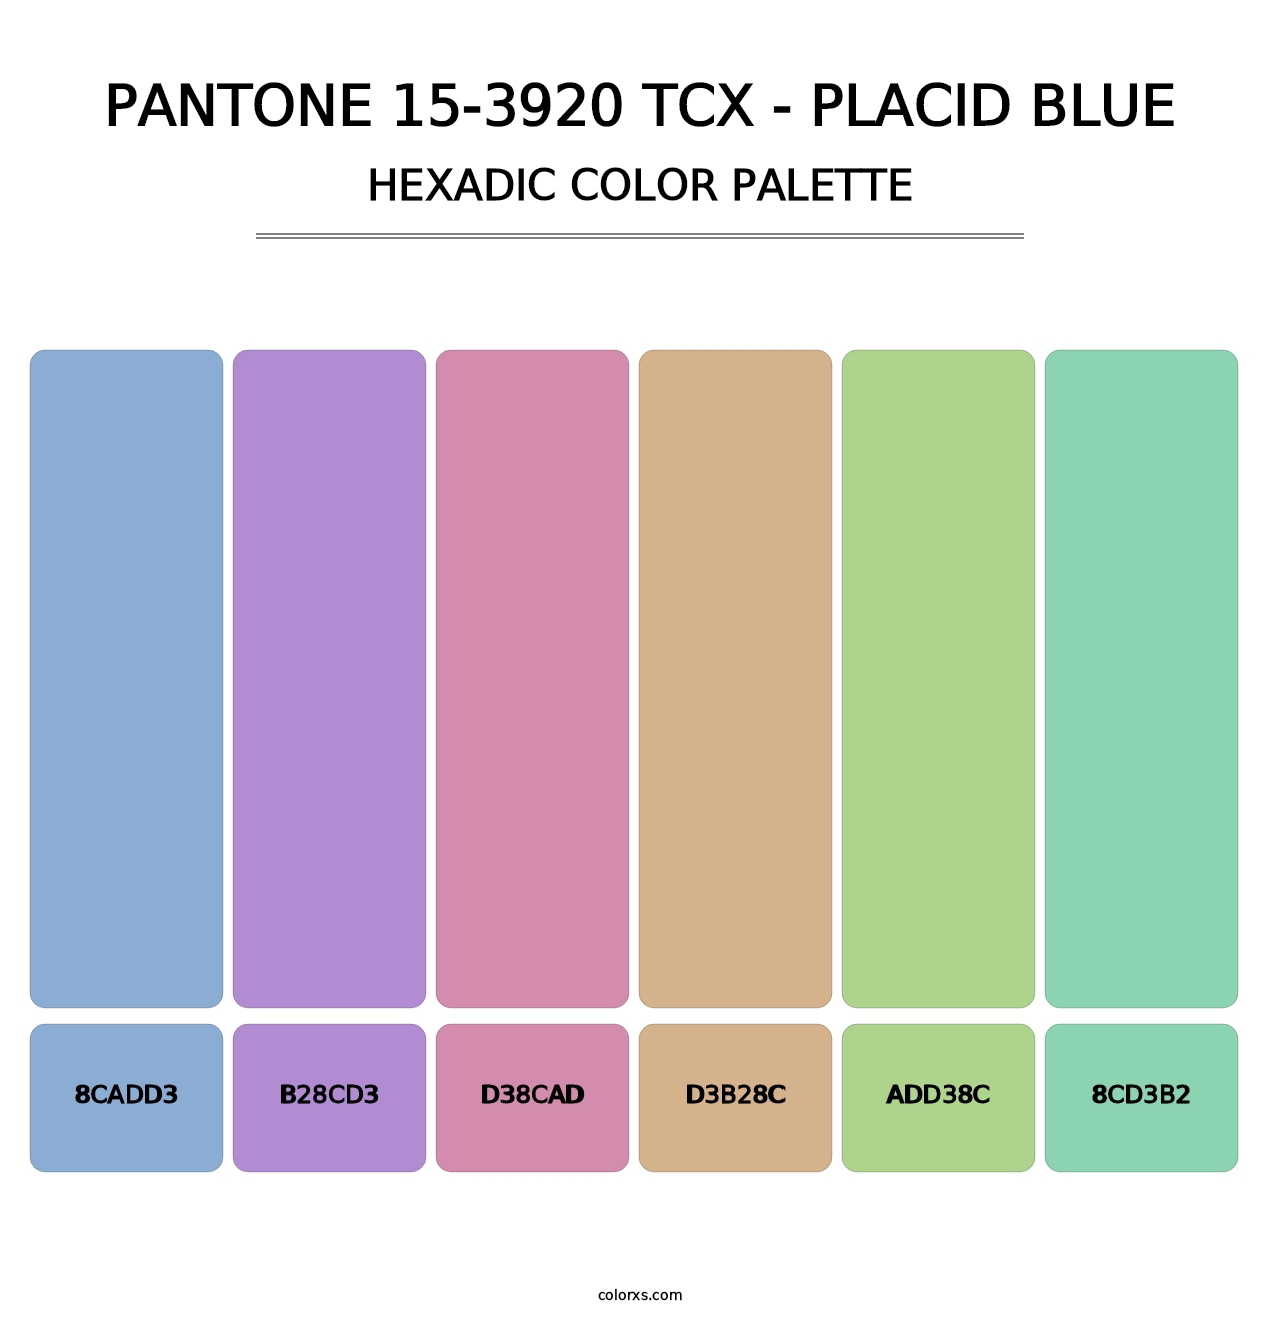 PANTONE 15-3920 TCX - Placid Blue - Hexadic Color Palette